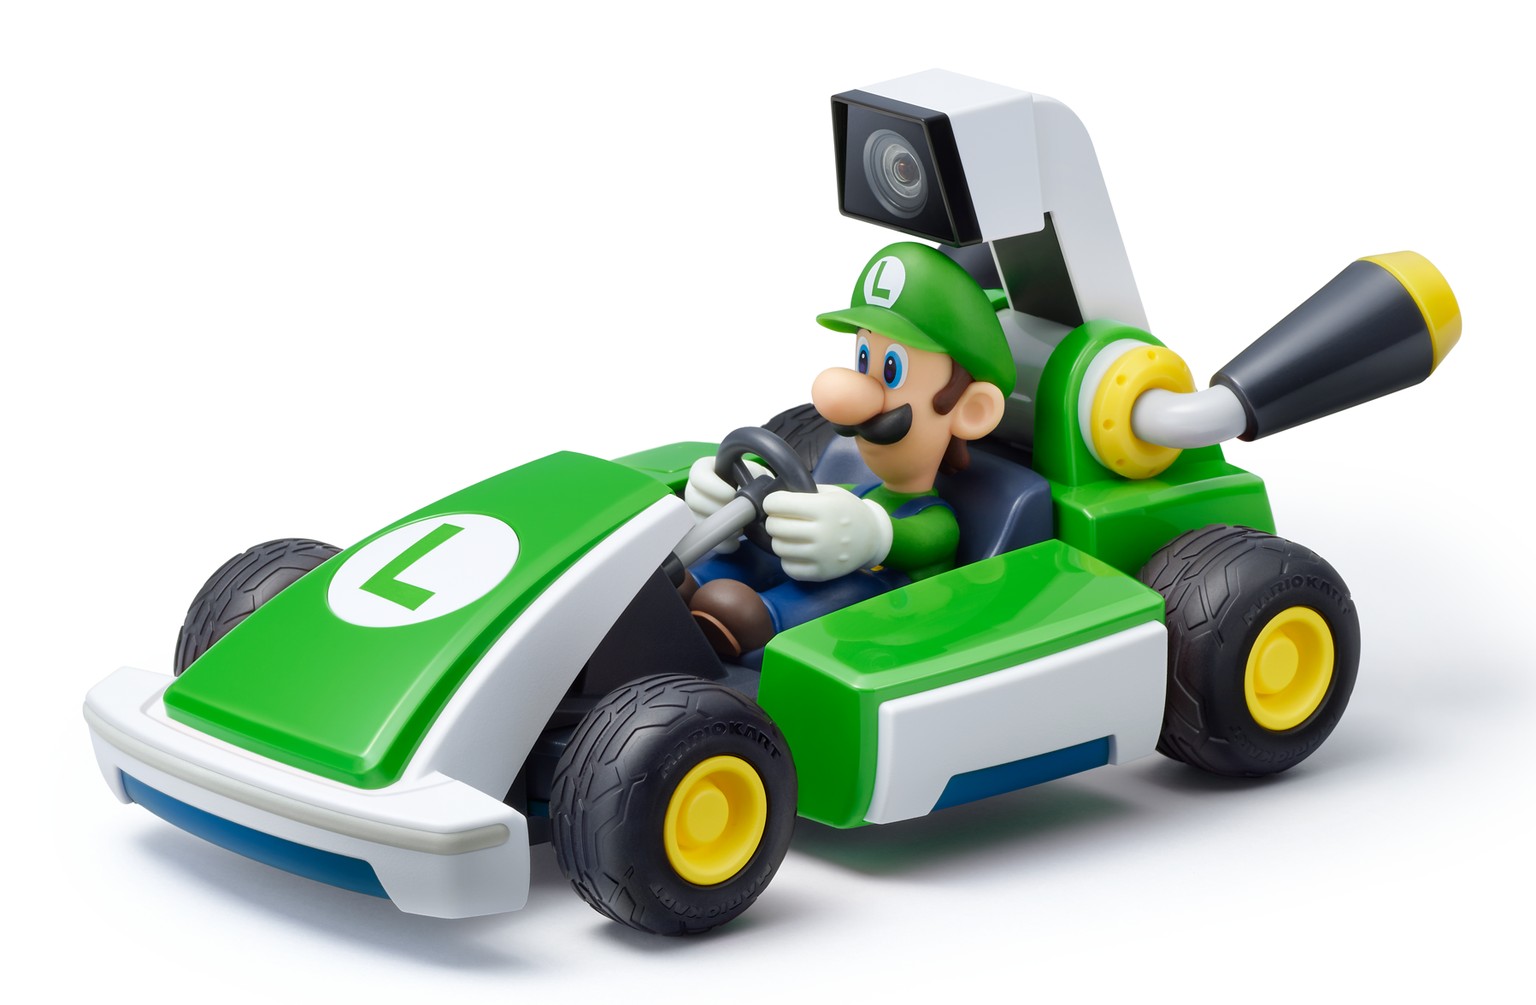 Auch die Luigi-Version sieht einfach nur knuffig aus.